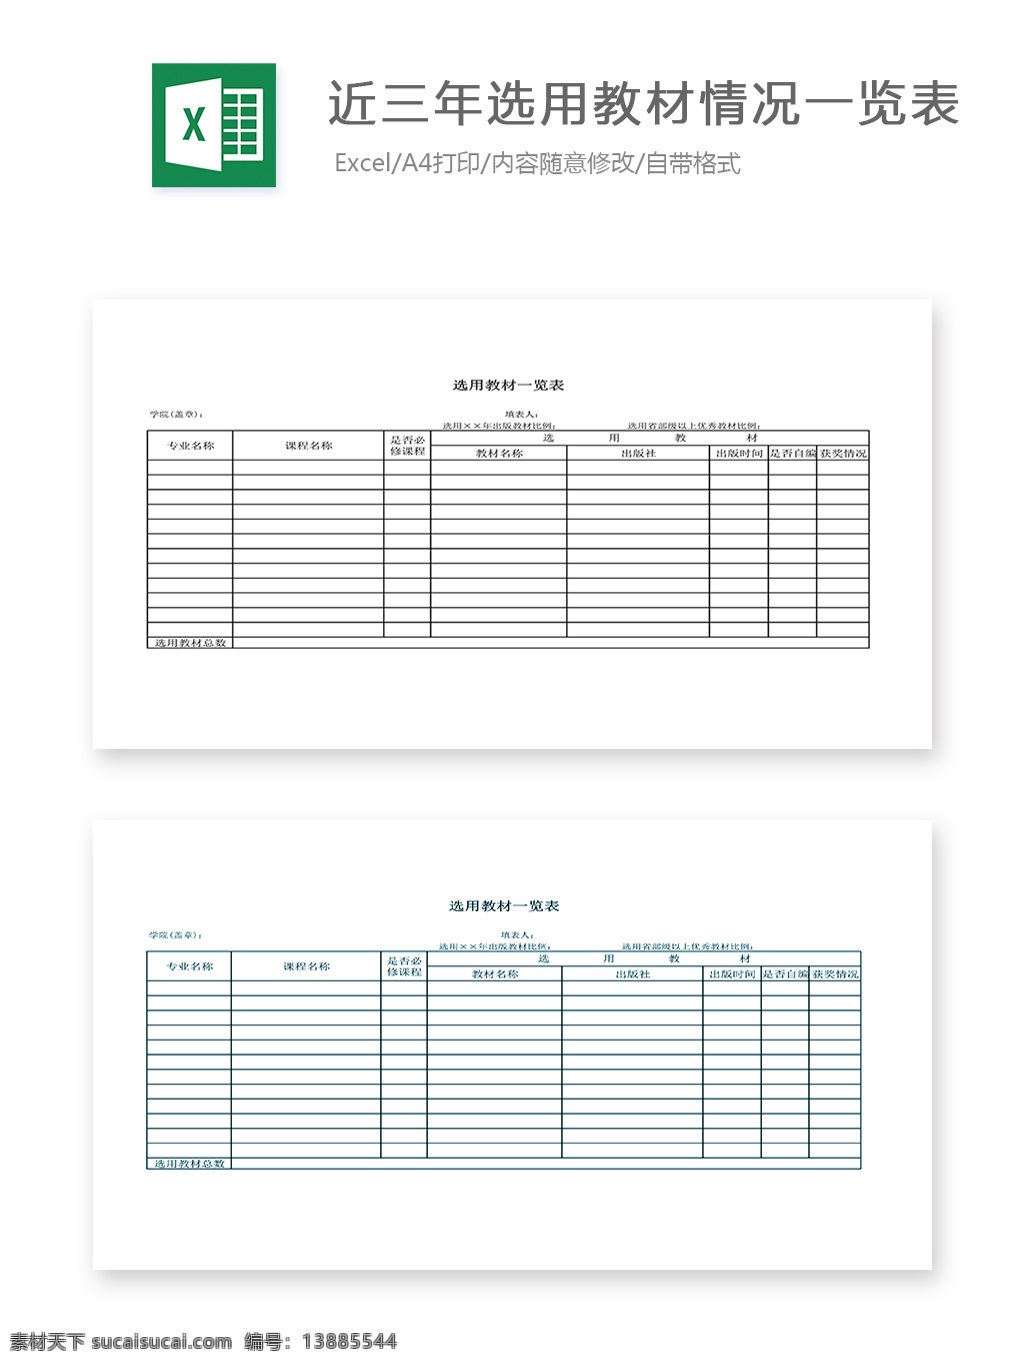 近 三 年 选用 教材 情况 一览表 表格 表格模板 表格设计 图表